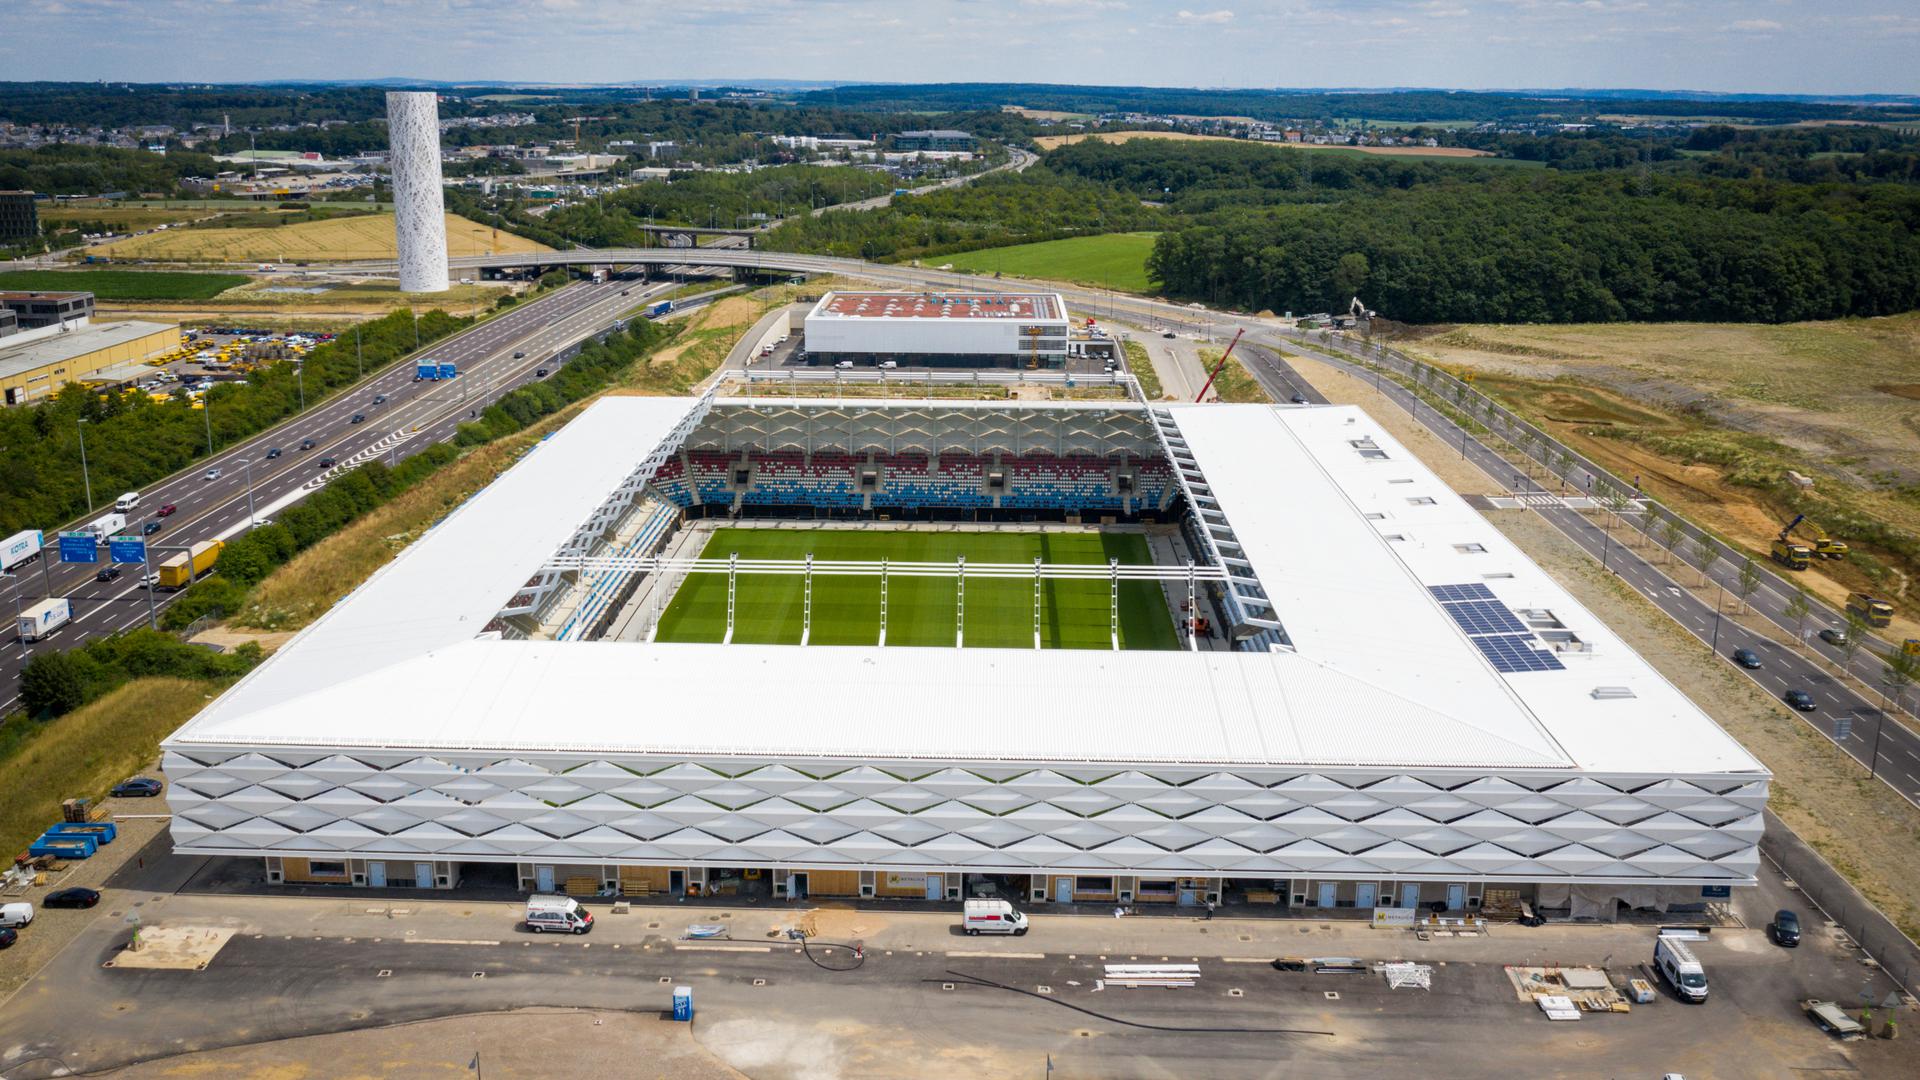 Le match de football Luxembourg-Écosse, prévu le 6 juin, aura donc lieu au stade des vétérans Josy-Barthel, route d'Arlon